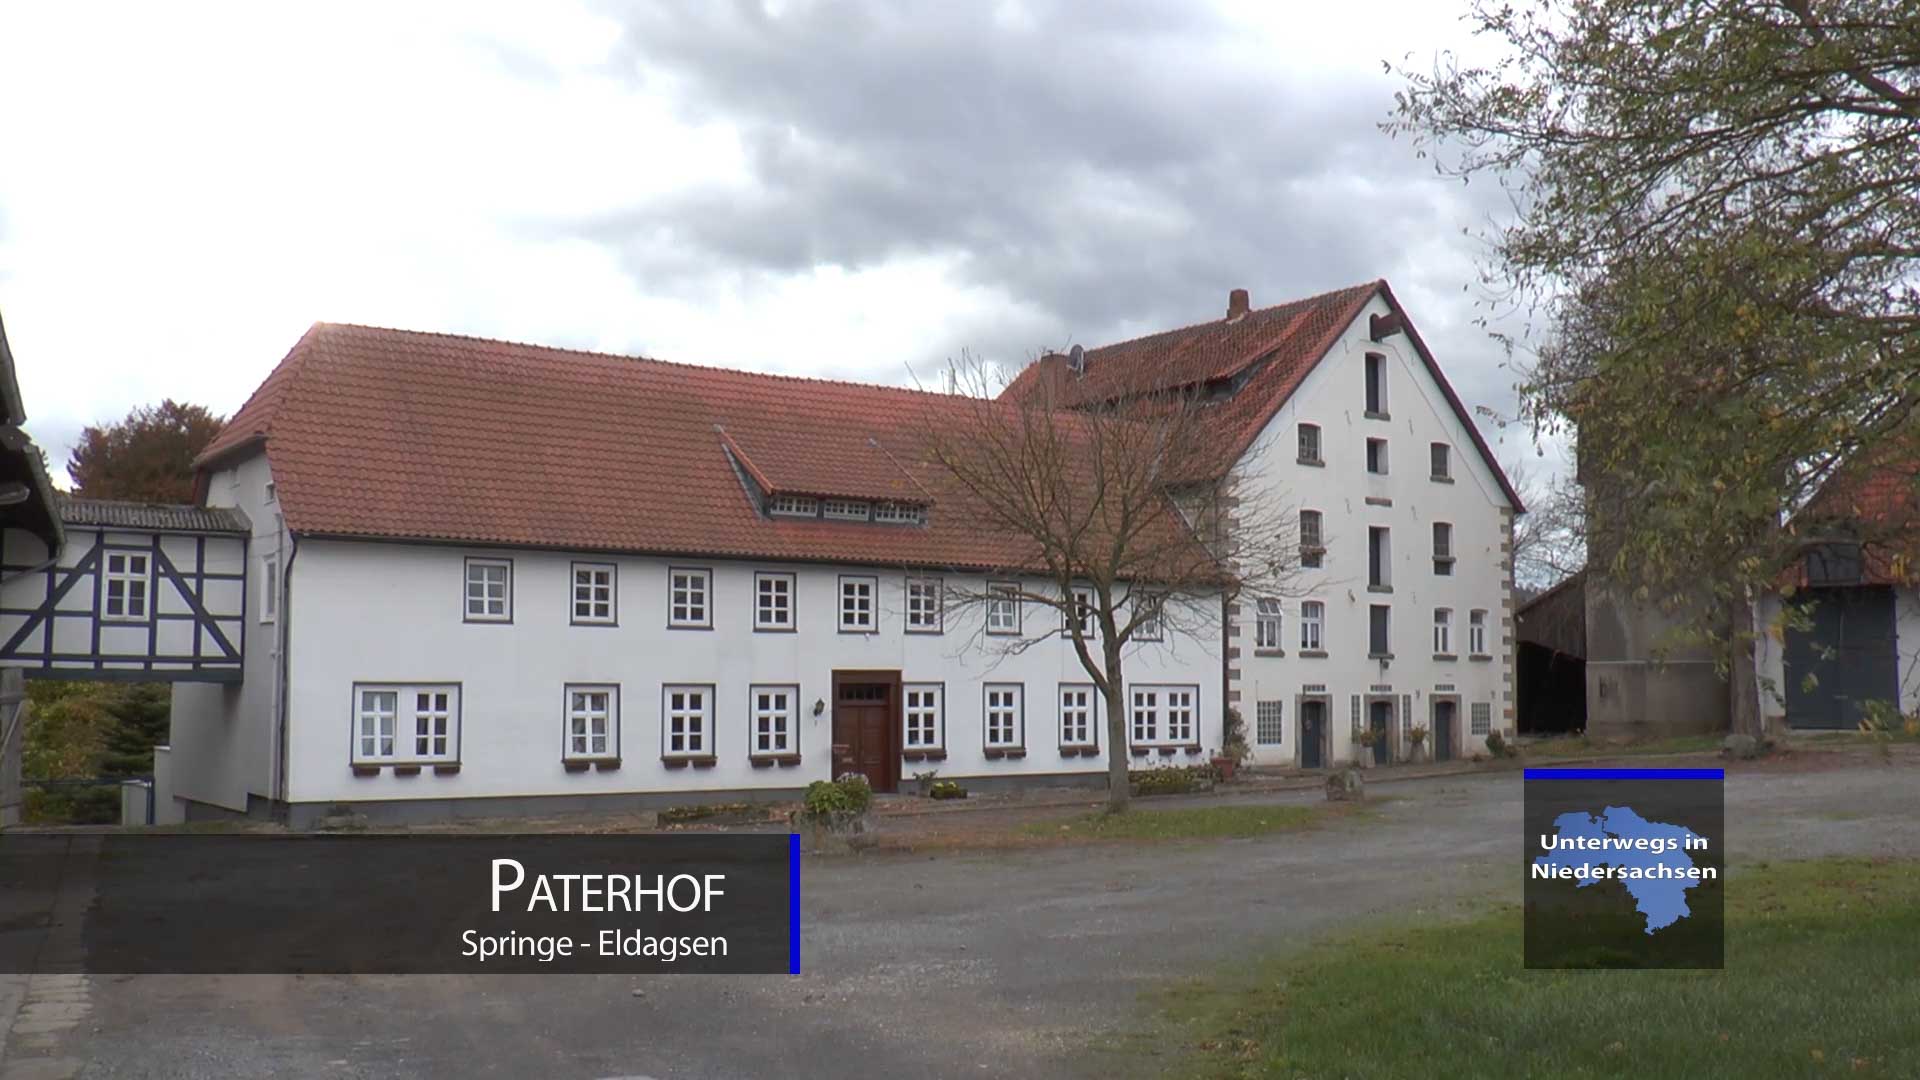 Paterhof